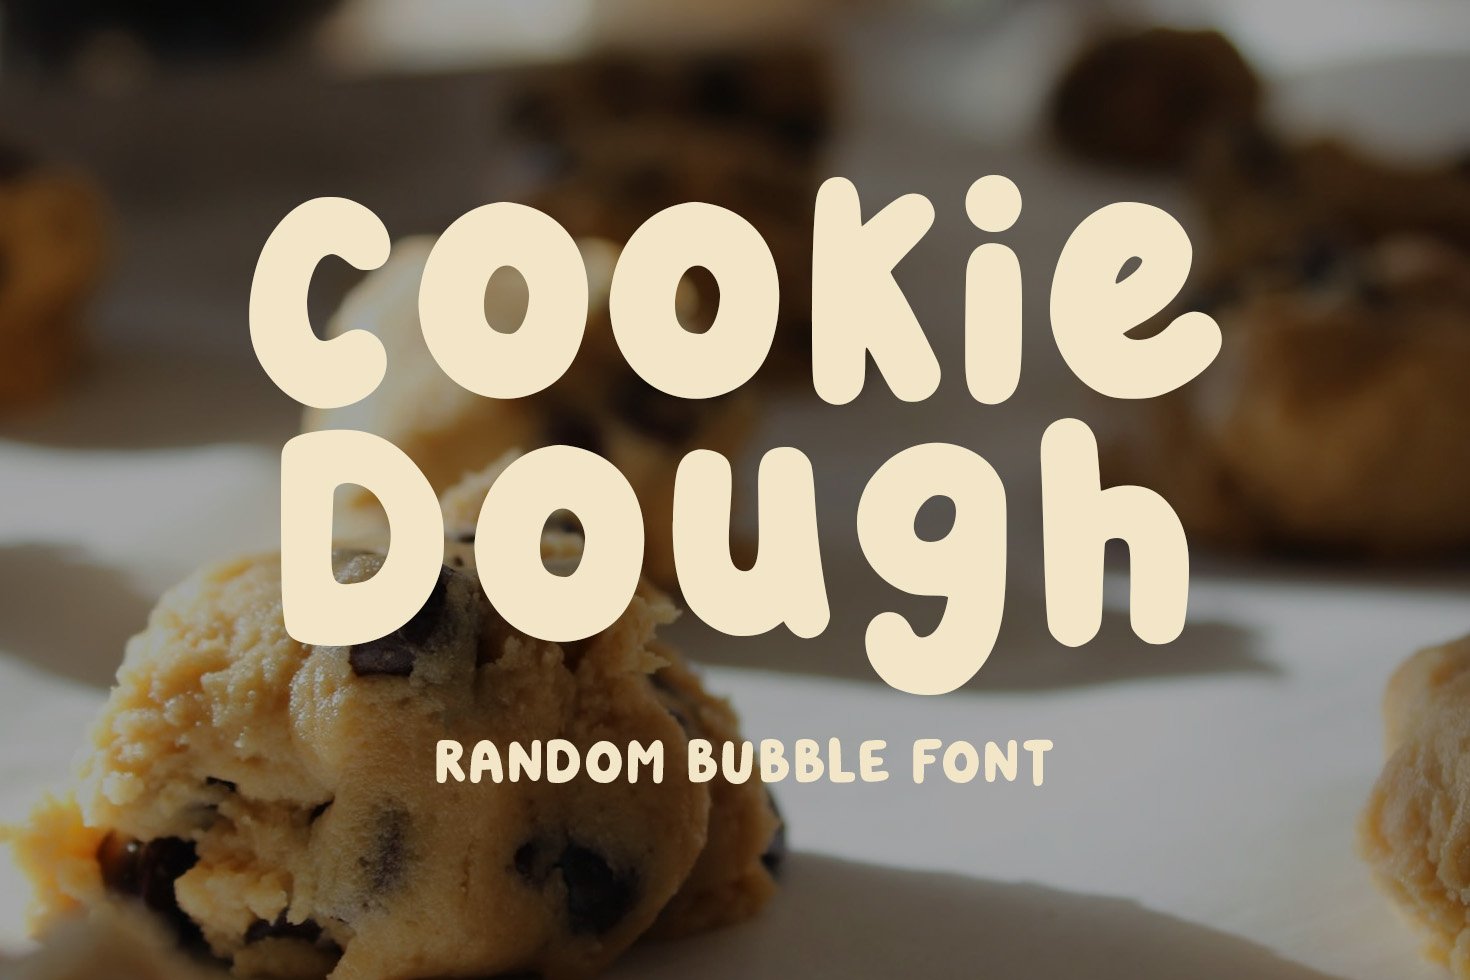 Cookie Dough - A Random Bubble Font cover image.